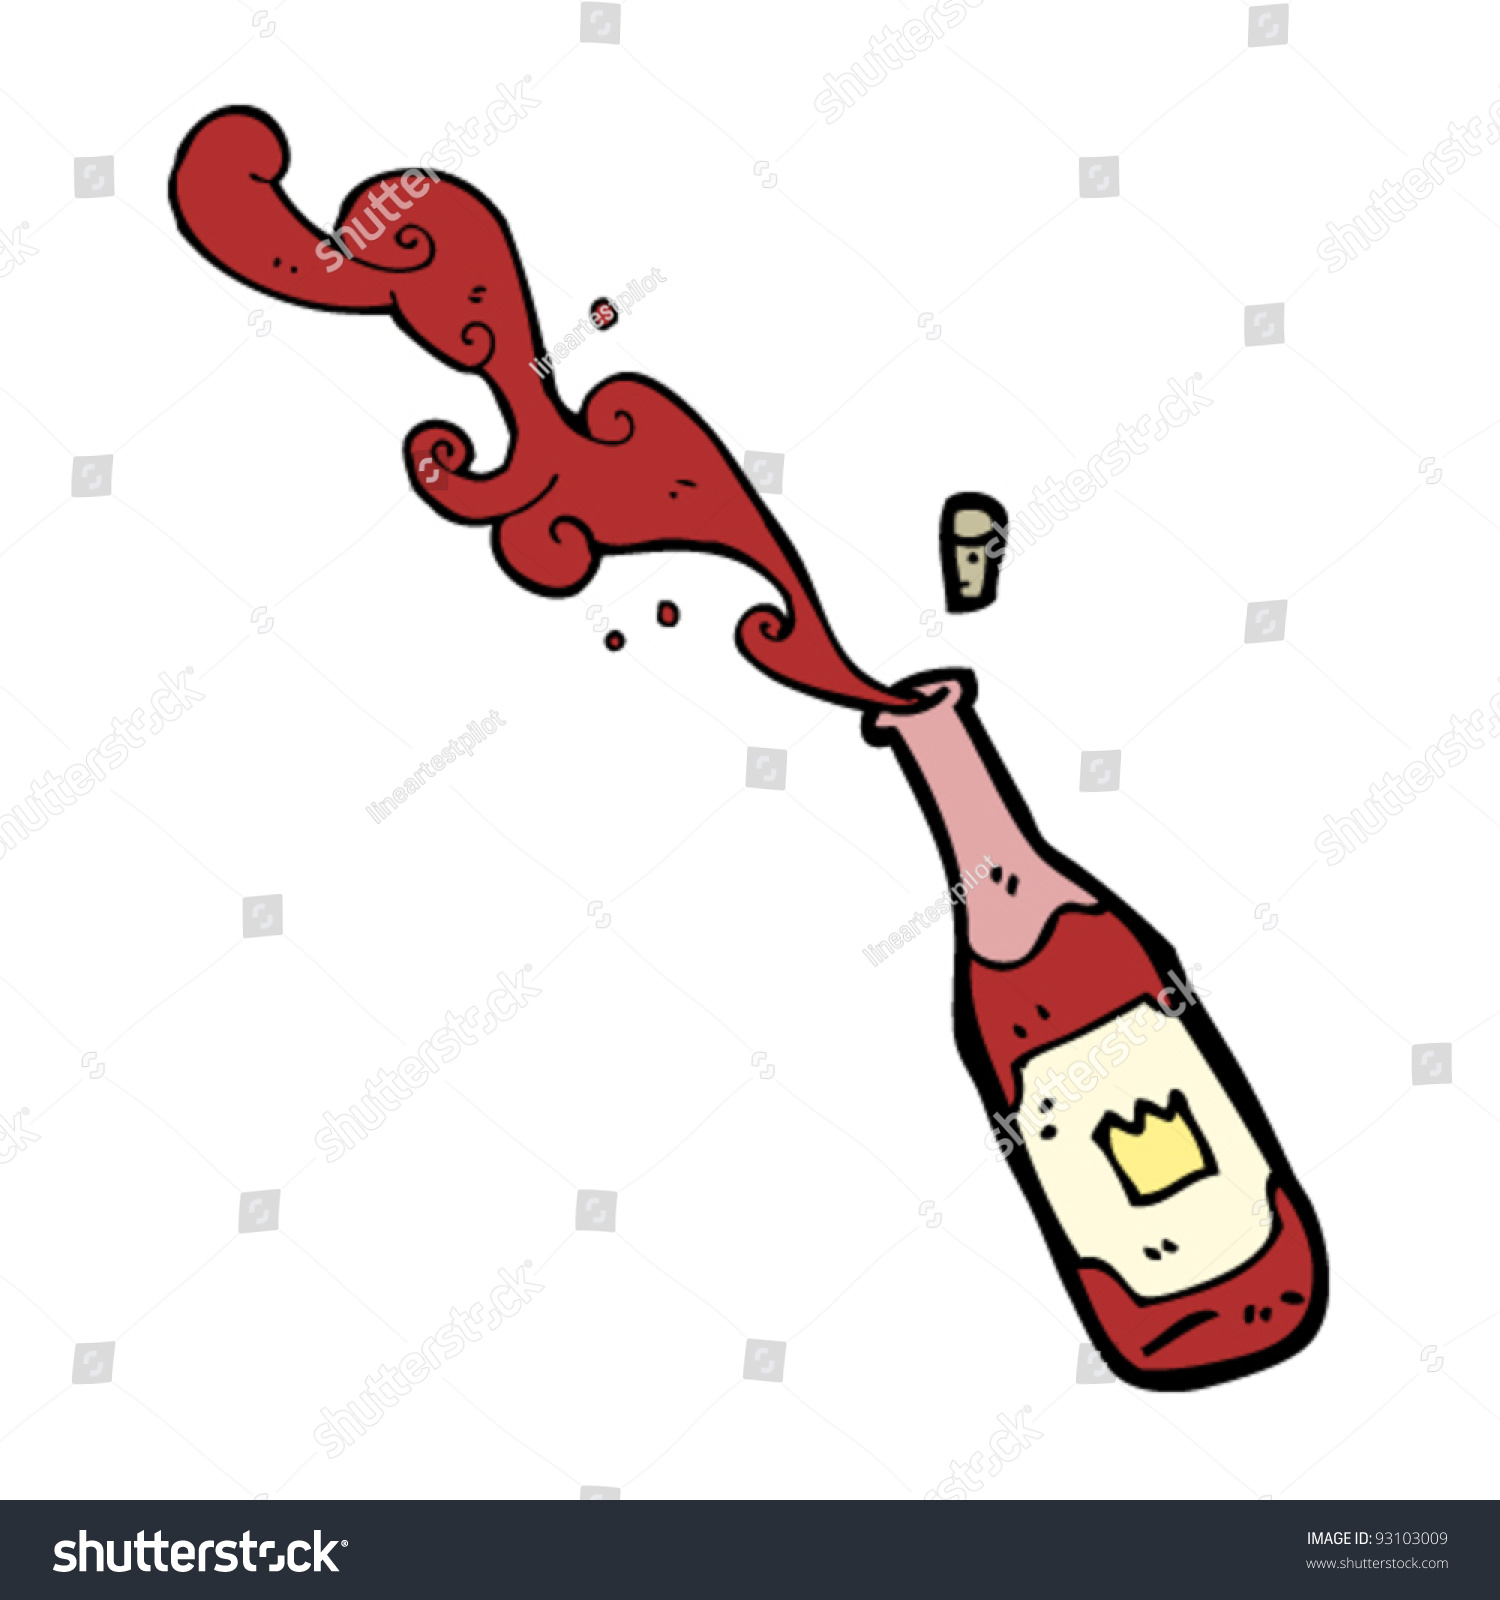 Red Wine Cartoon Stock Vector 93103009 - Shutterstock